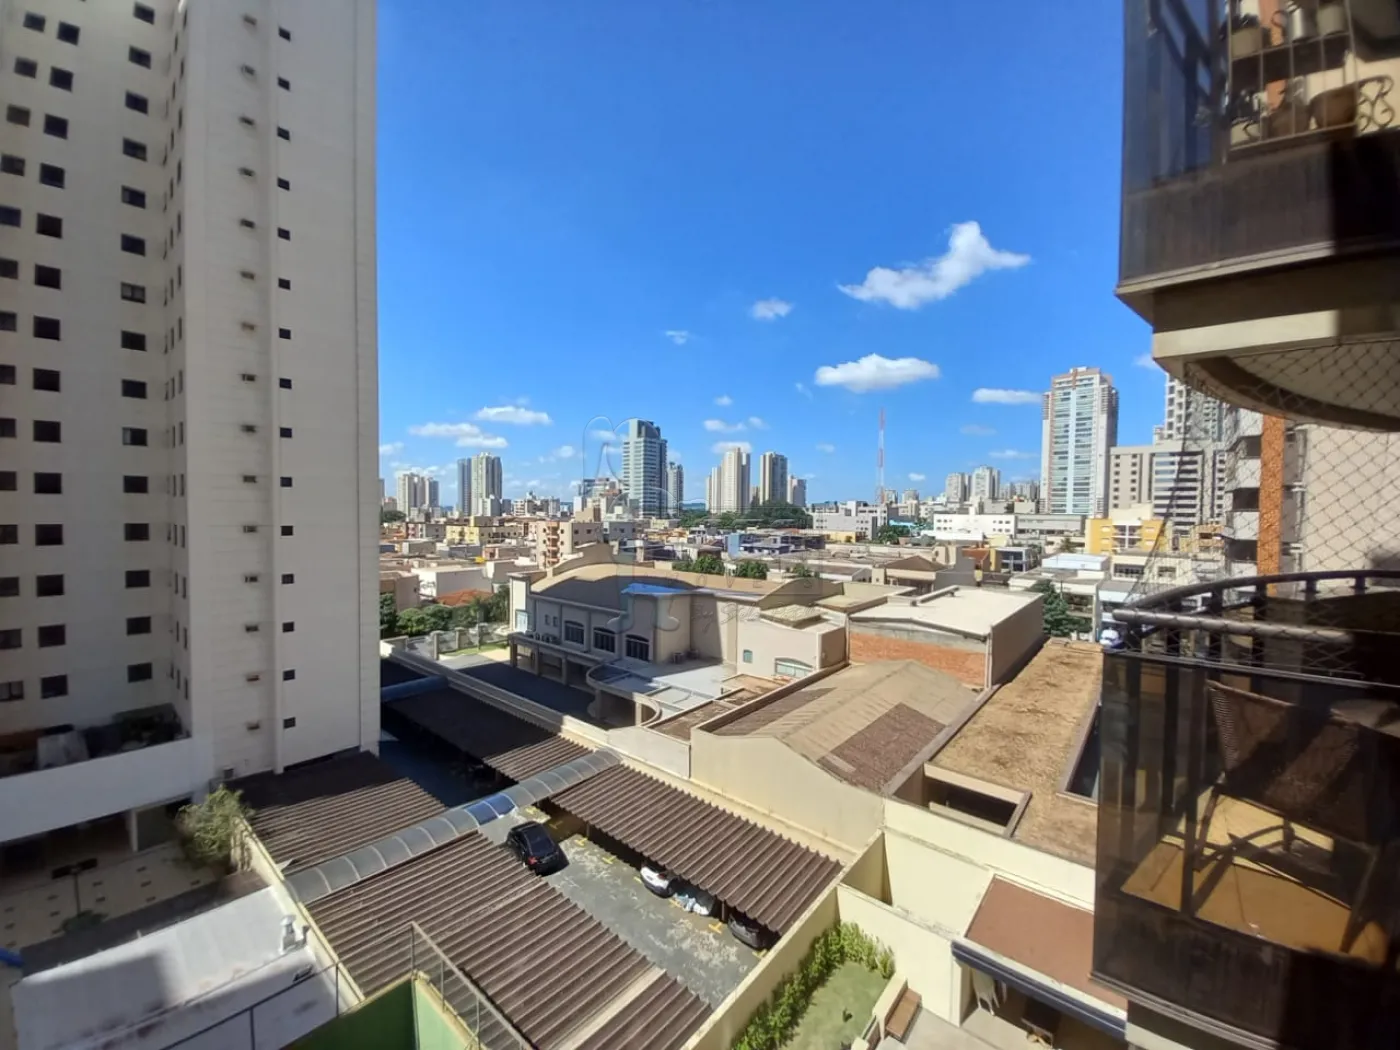 Alugar Apartamento / Padrão em Ribeirão Preto R$ 3.800,00 - Foto 6